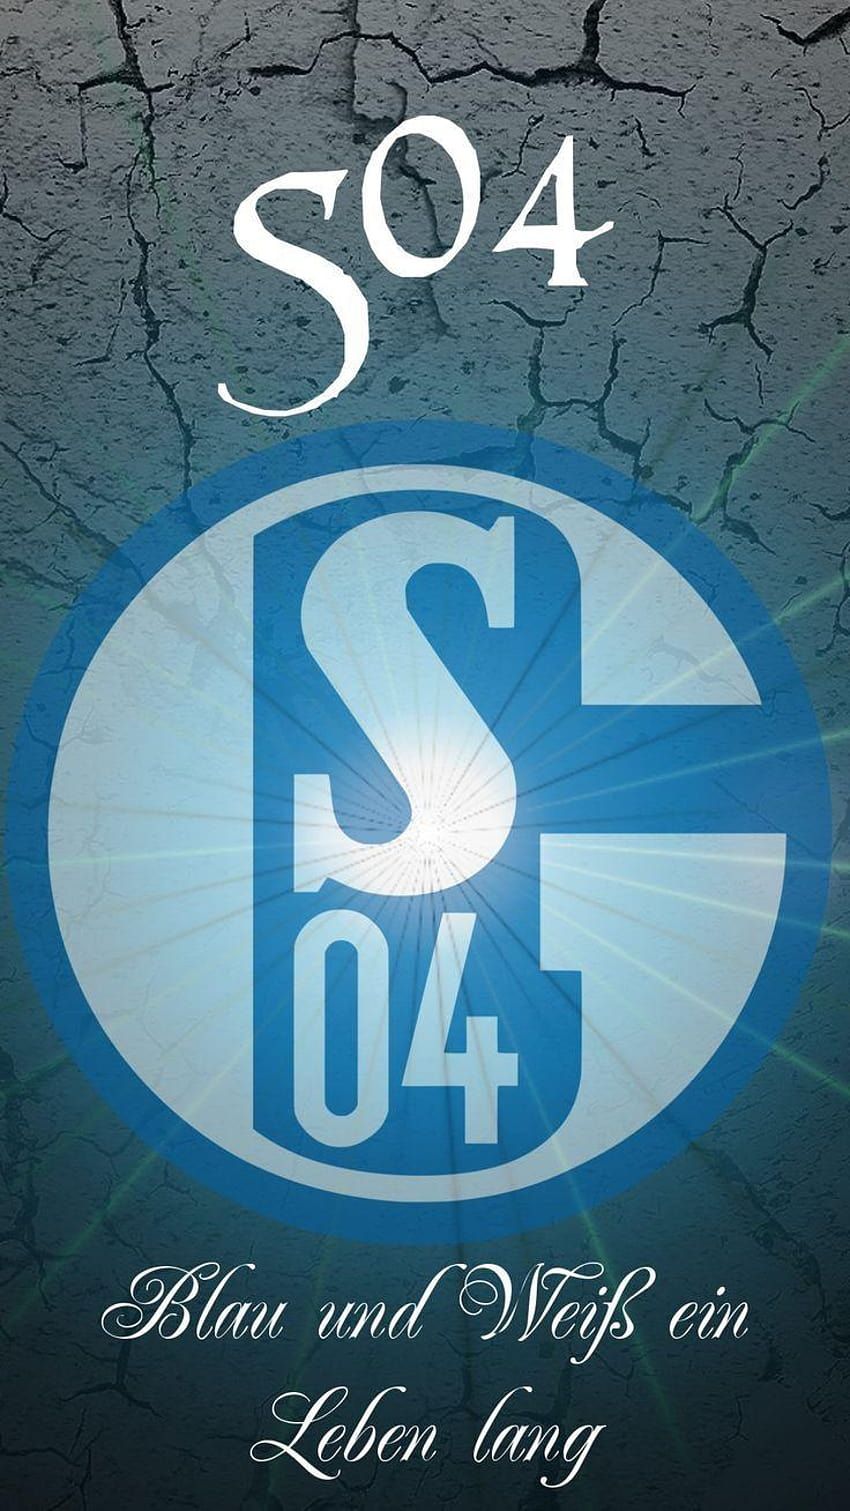  HD Schalke 04 Hintergrundbild 850x1511. Die besten 2 Schalke 04 logo Ideen auf Pinterest HD phone wallpaper